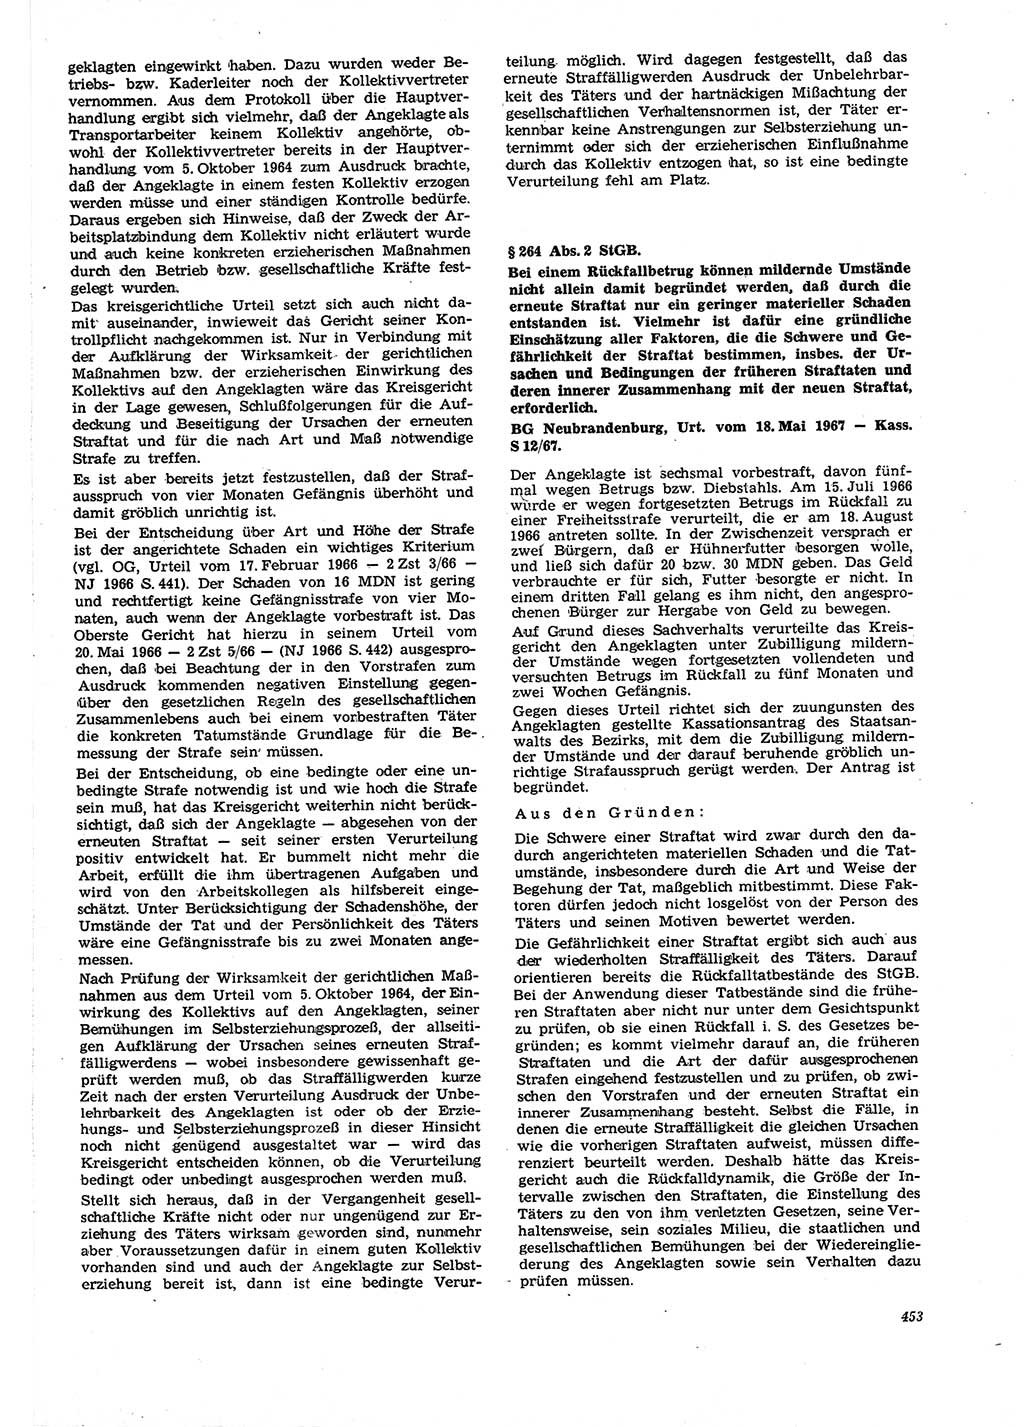 Neue Justiz (NJ), Zeitschrift für Recht und Rechtswissenschaft [Deutsche Demokratische Republik (DDR)], 21. Jahrgang 1967, Seite 453 (NJ DDR 1967, S. 453)